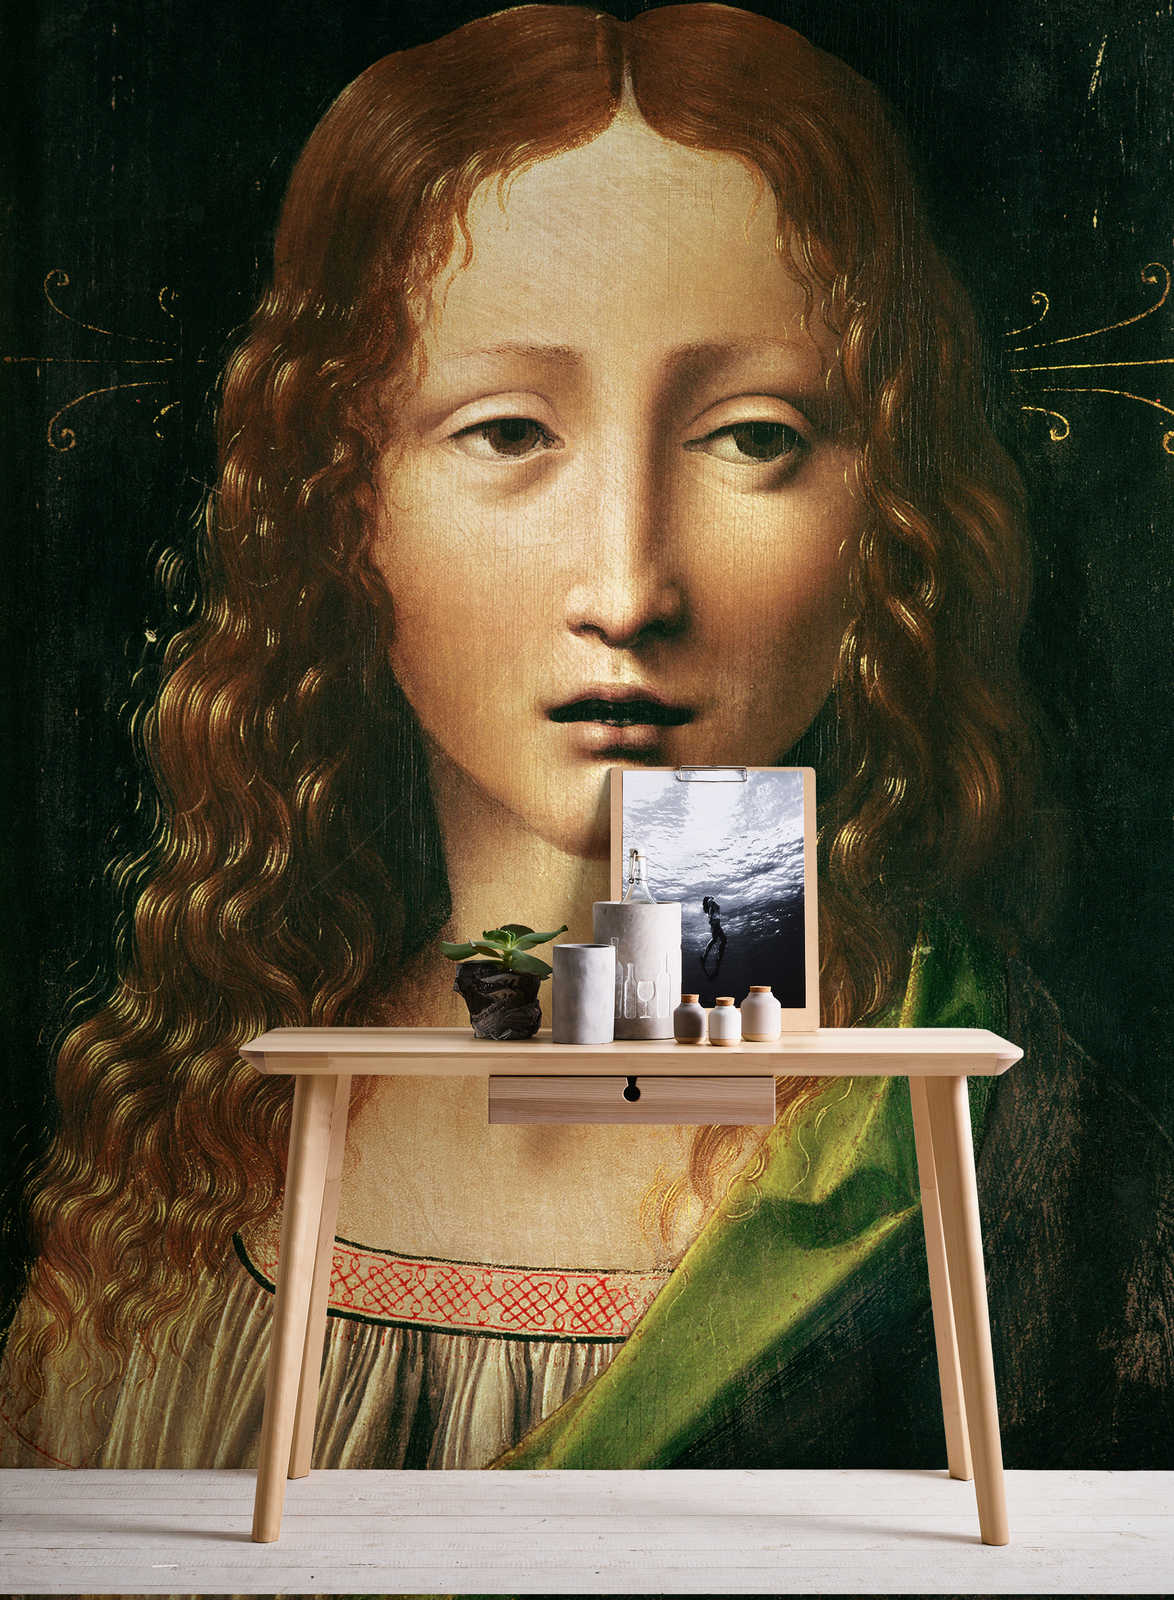             Papier peint panoramique "Tête du Sauveur" de Léonard de Vinci
        